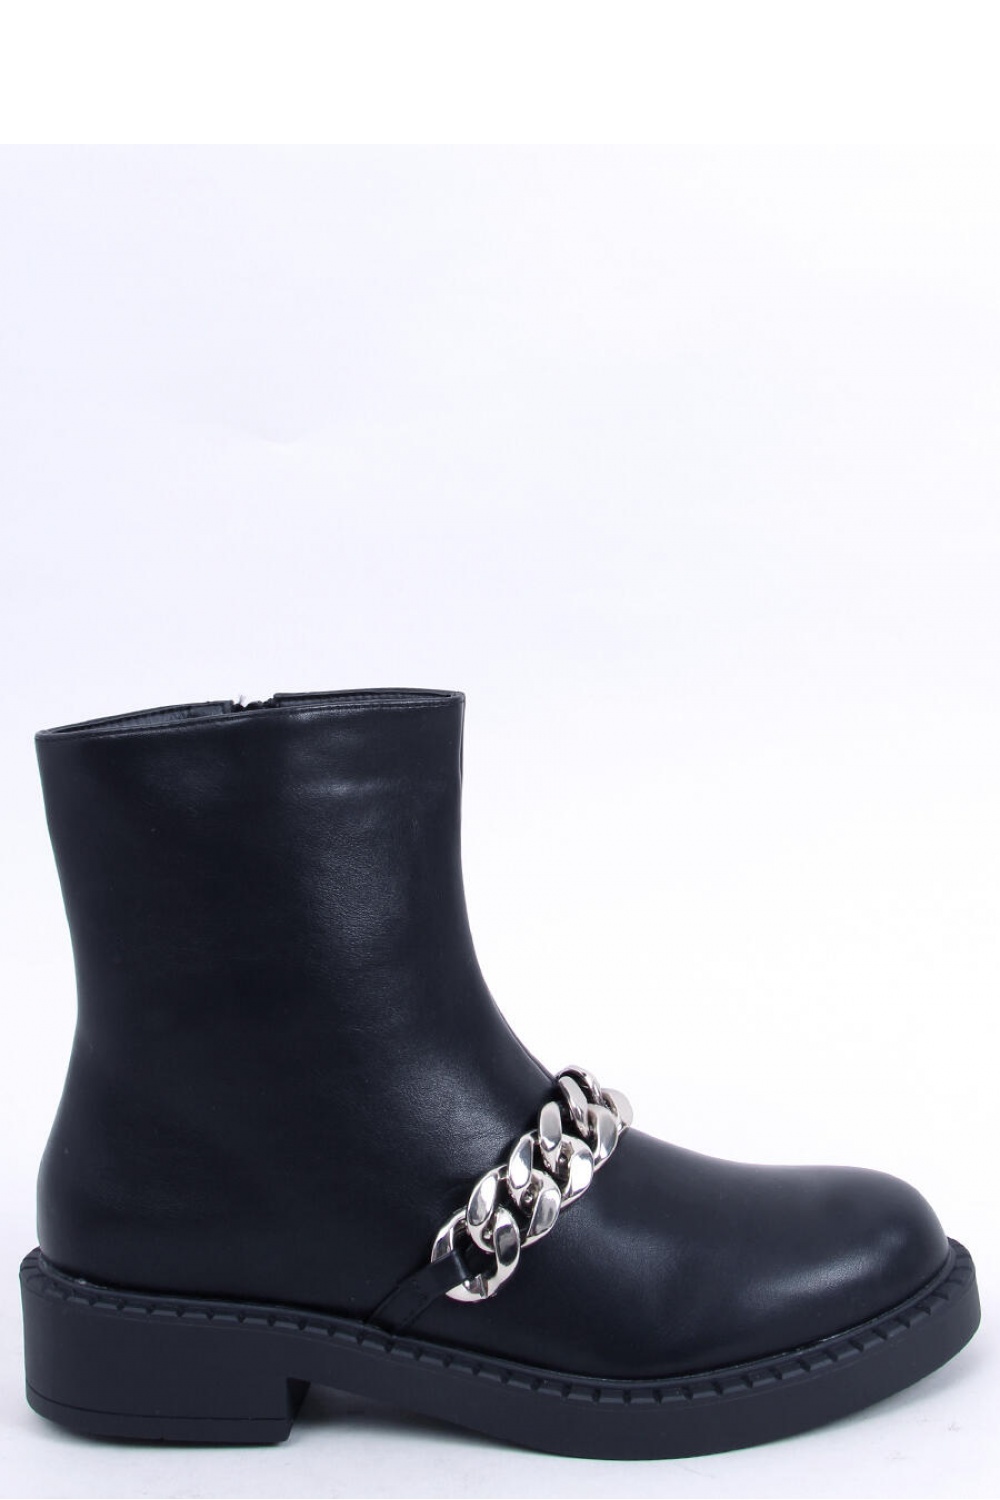  Boots model 173539 Inello  black